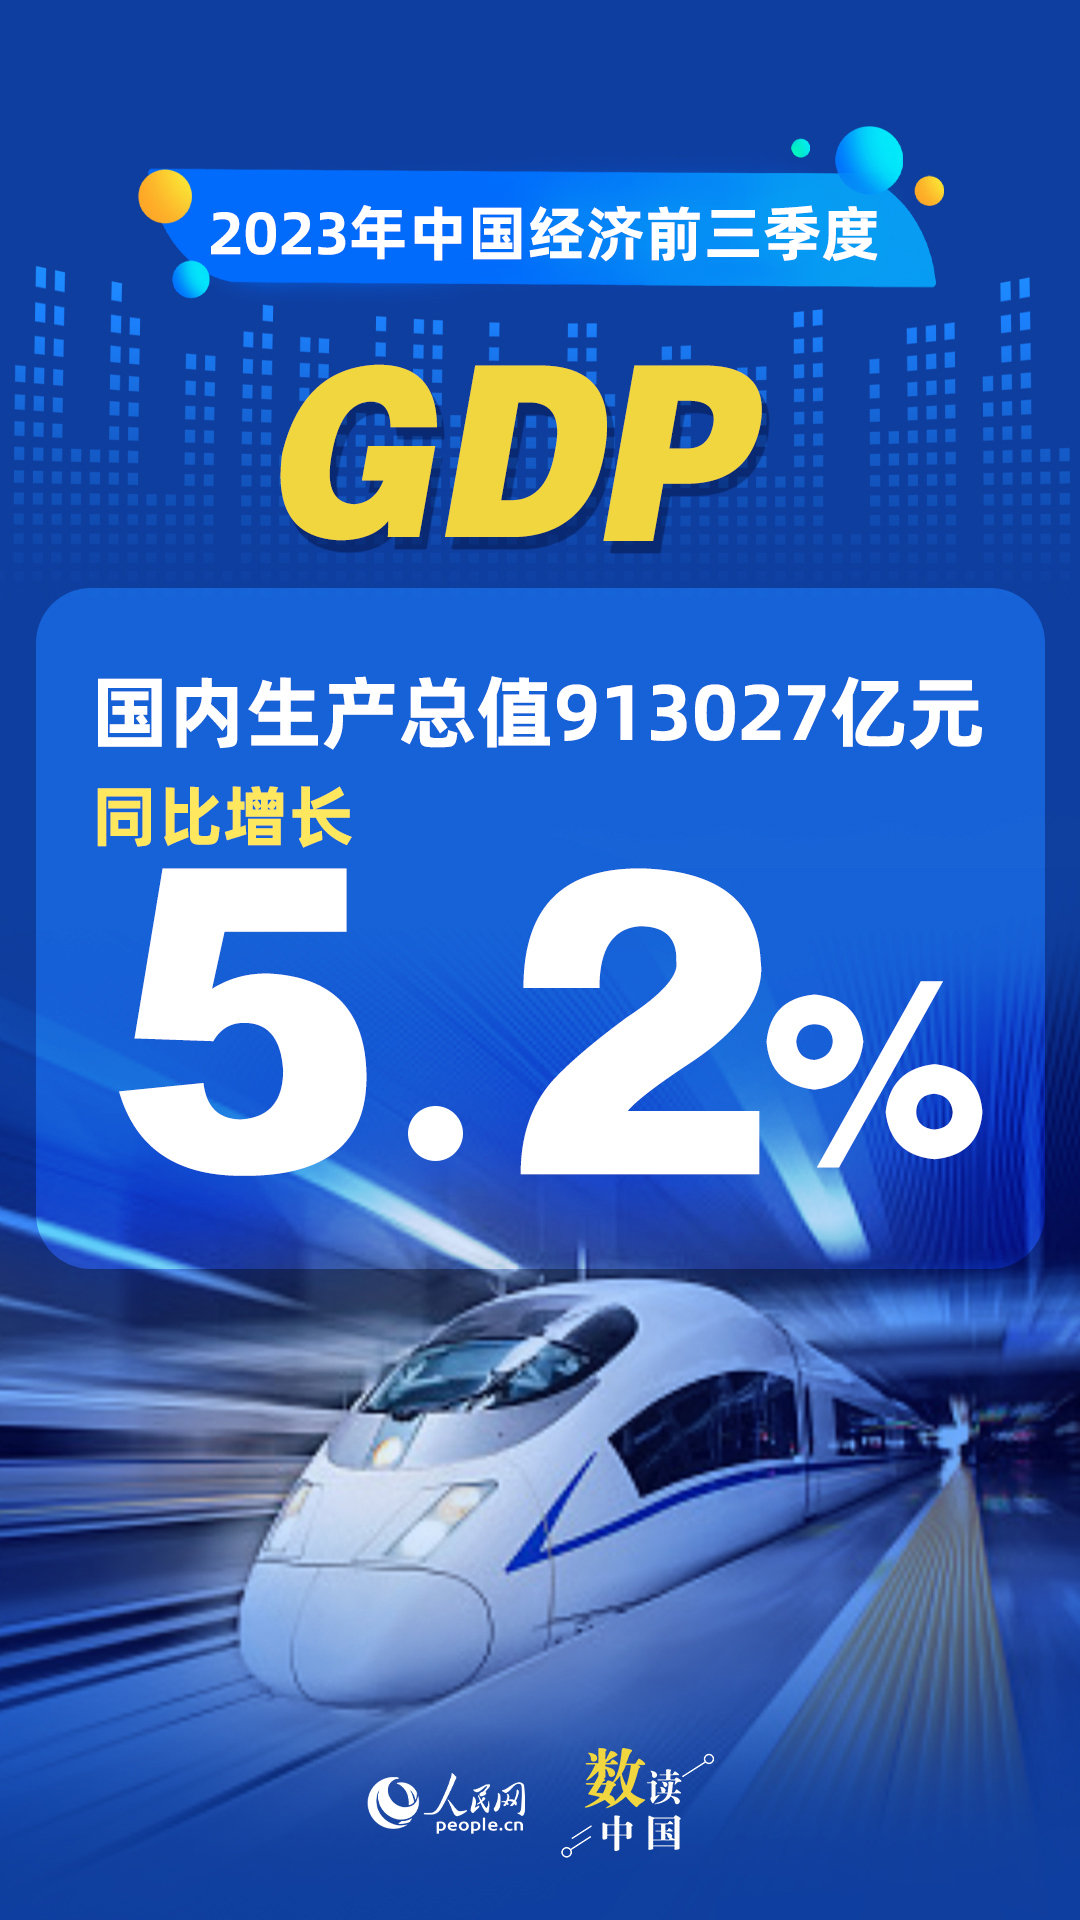 恒耀官方：数读中国 | 前三季度国民经济持续恢复向好 积极因素累积增多